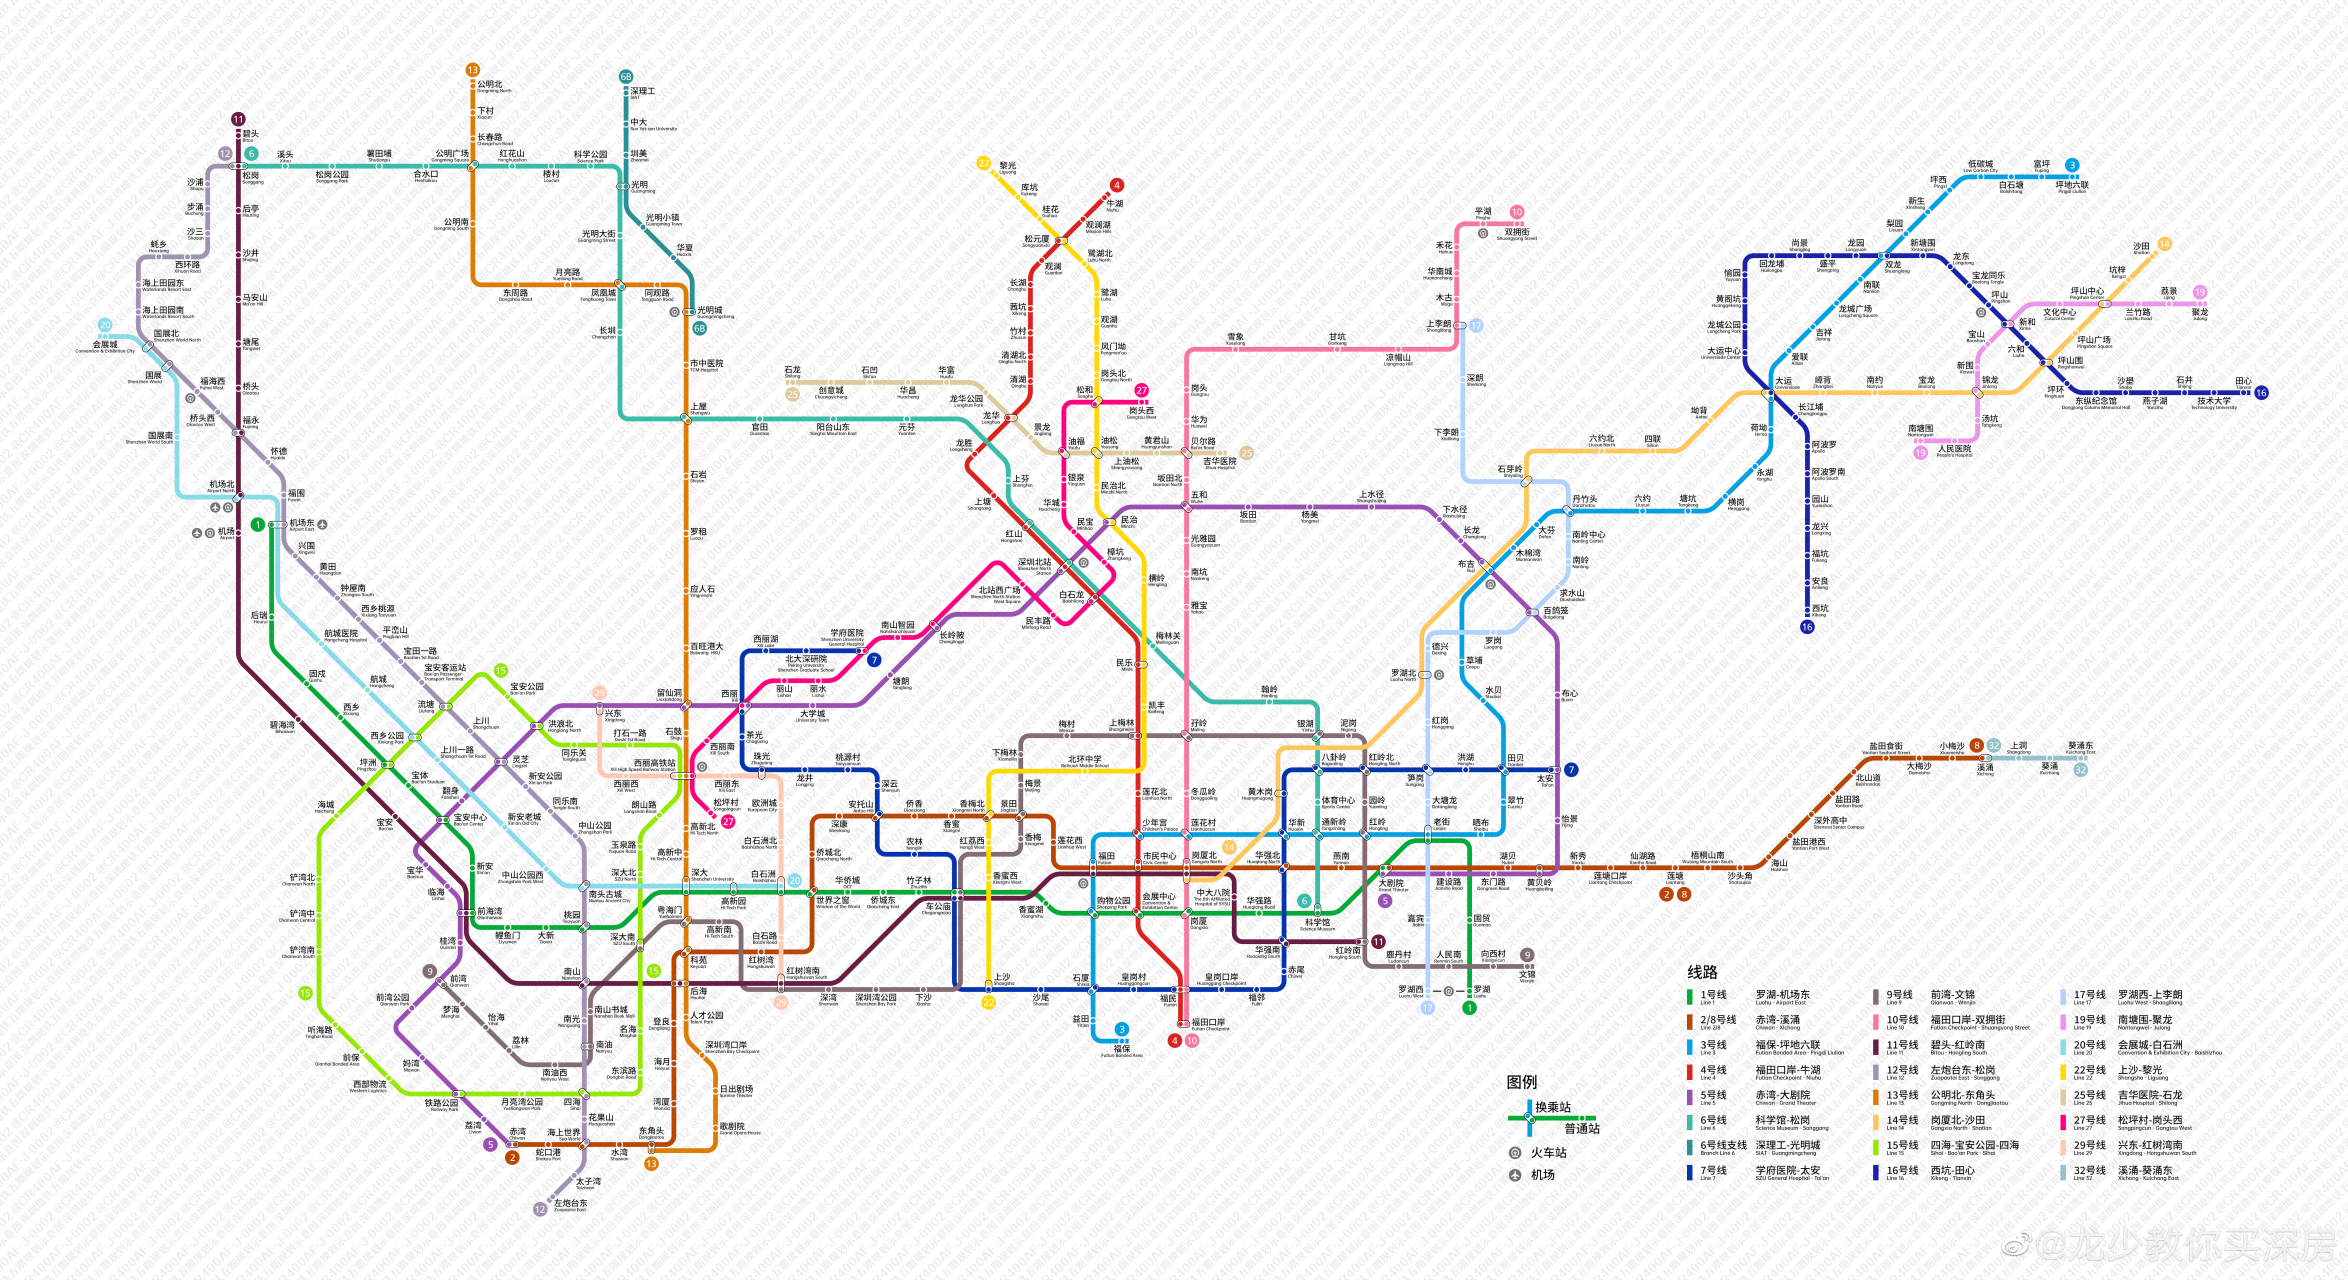 深圳地铁最新线路图(含5期9条新线路)  赢麻了的龙华和宝安,基本上